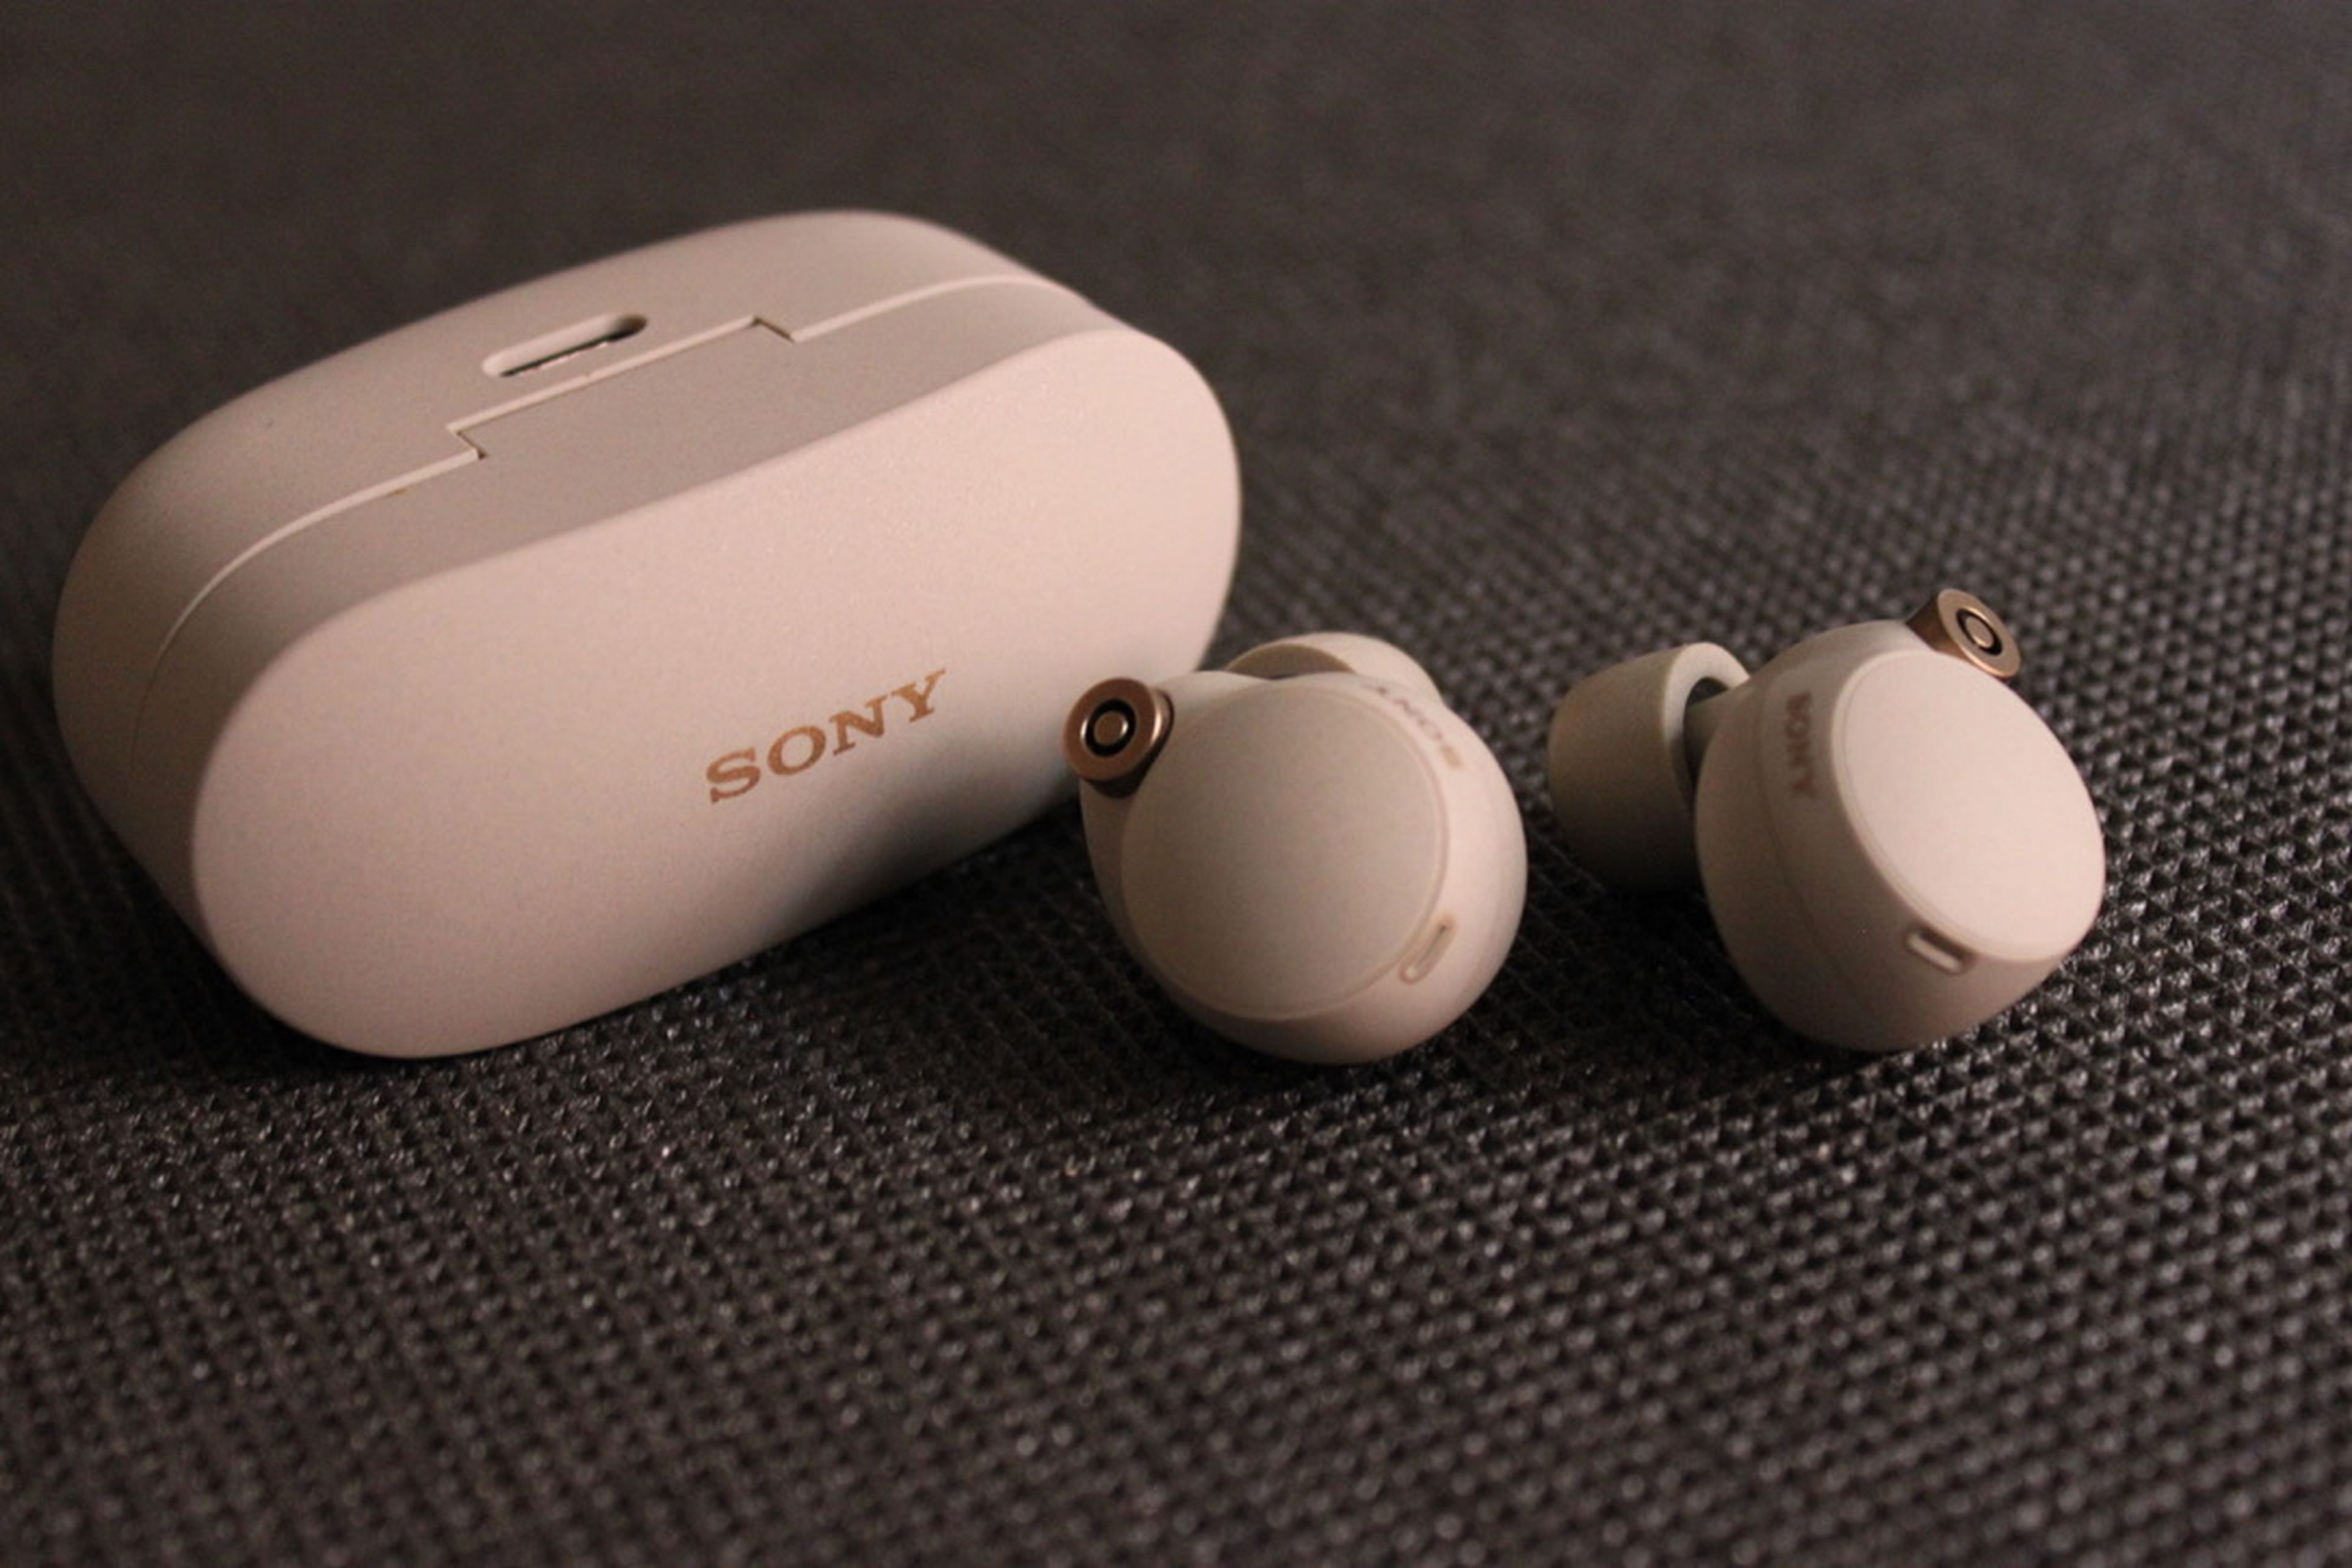 Análisis: Probamos los Sony WF-1000XM4: los mejores auriculares